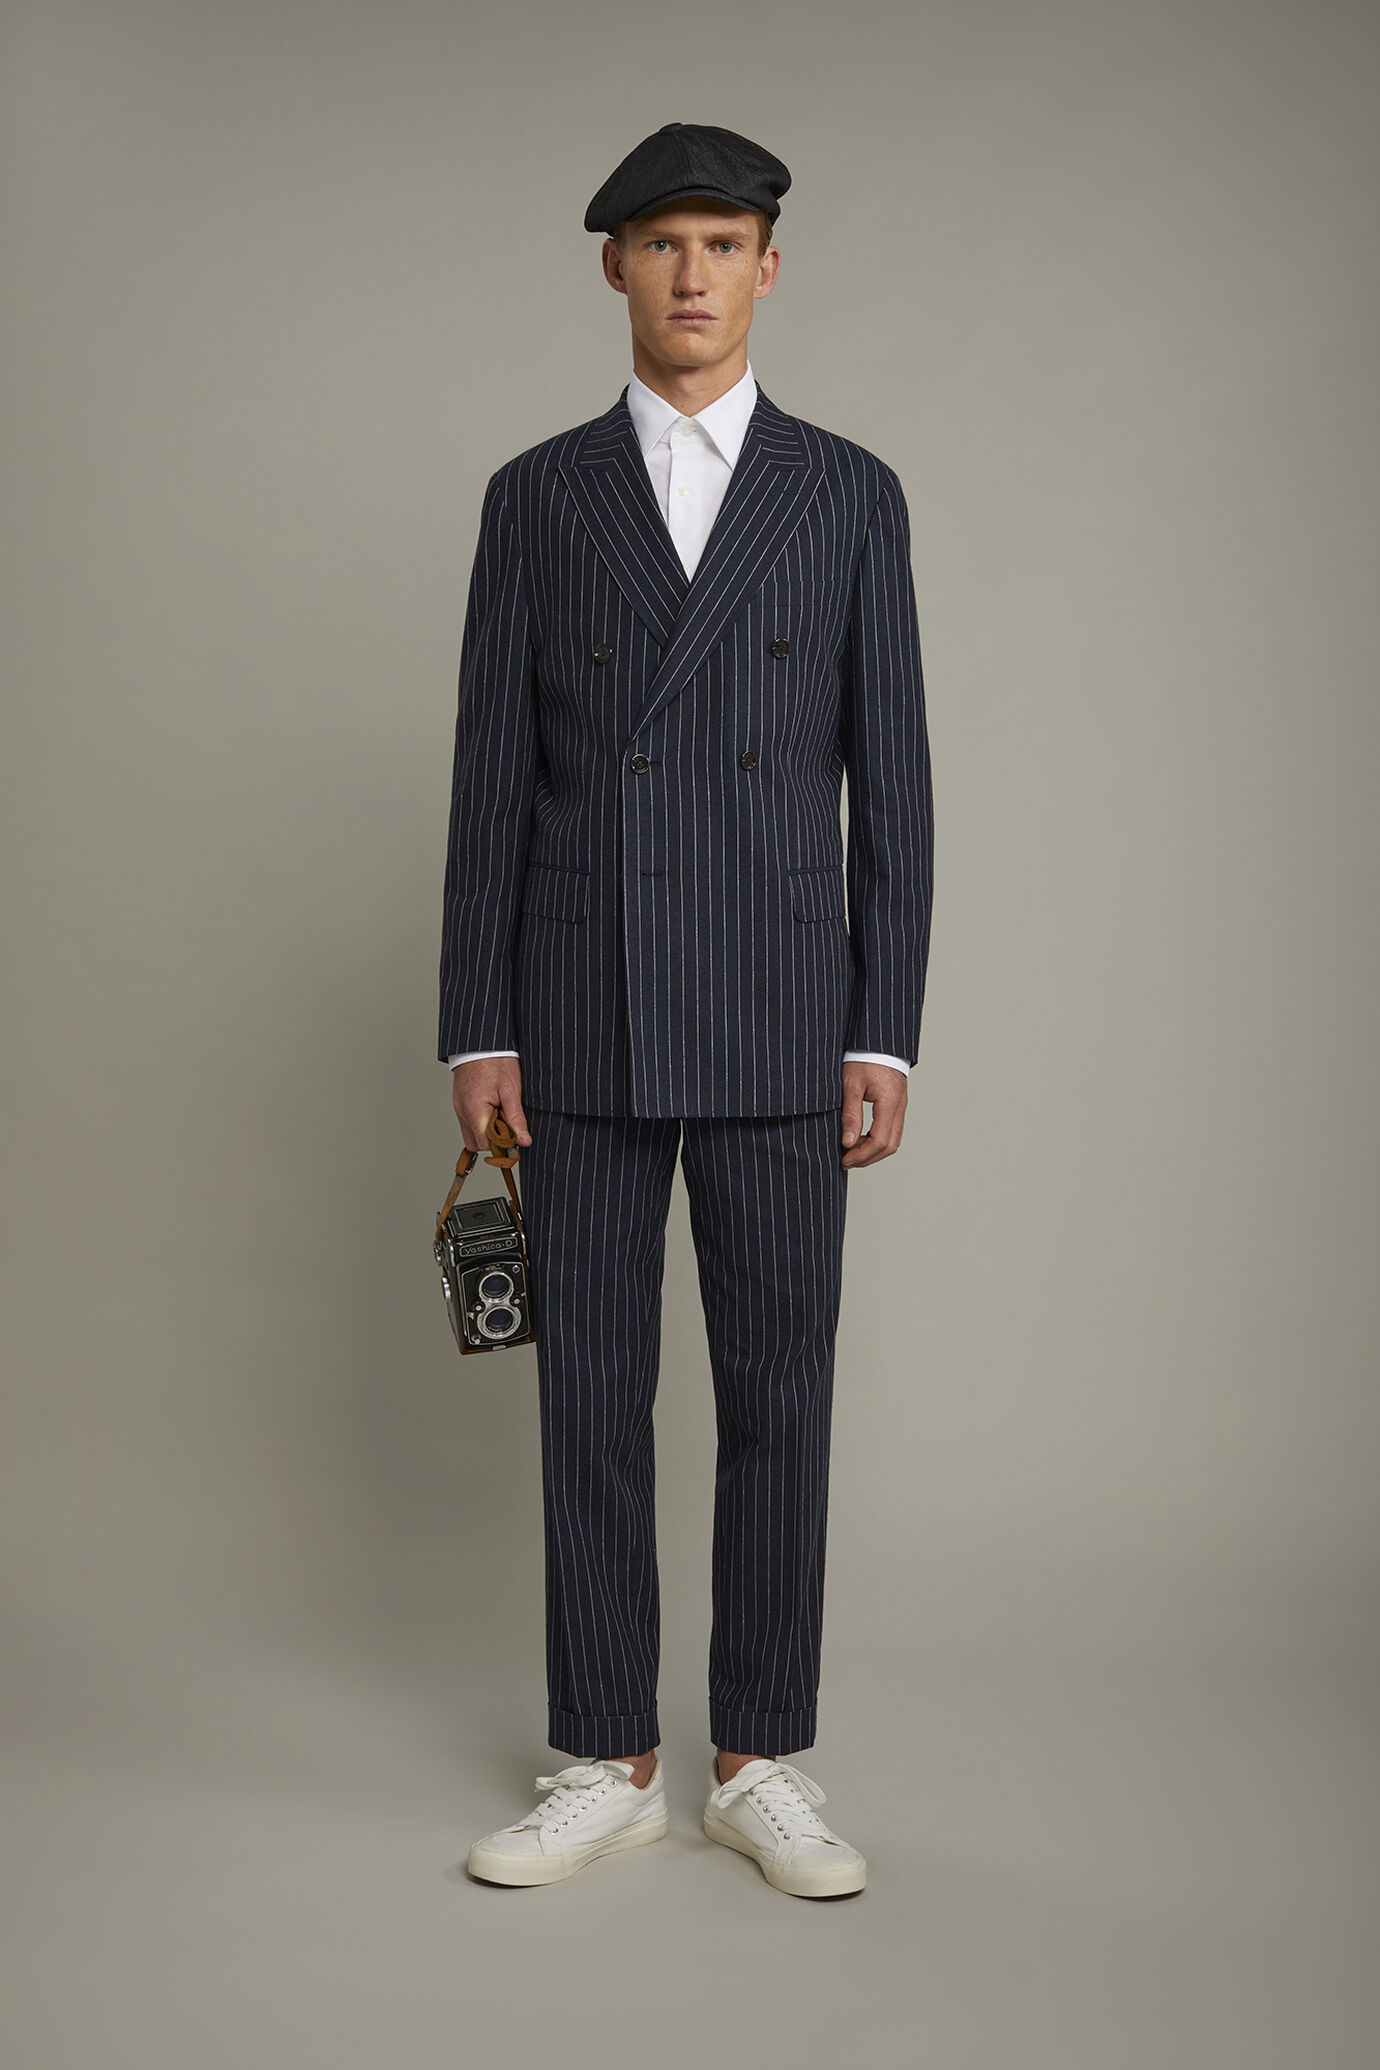 Pantalone classico uomo con doppia pince tessuto lino e cotone con disegno gessato regular fit